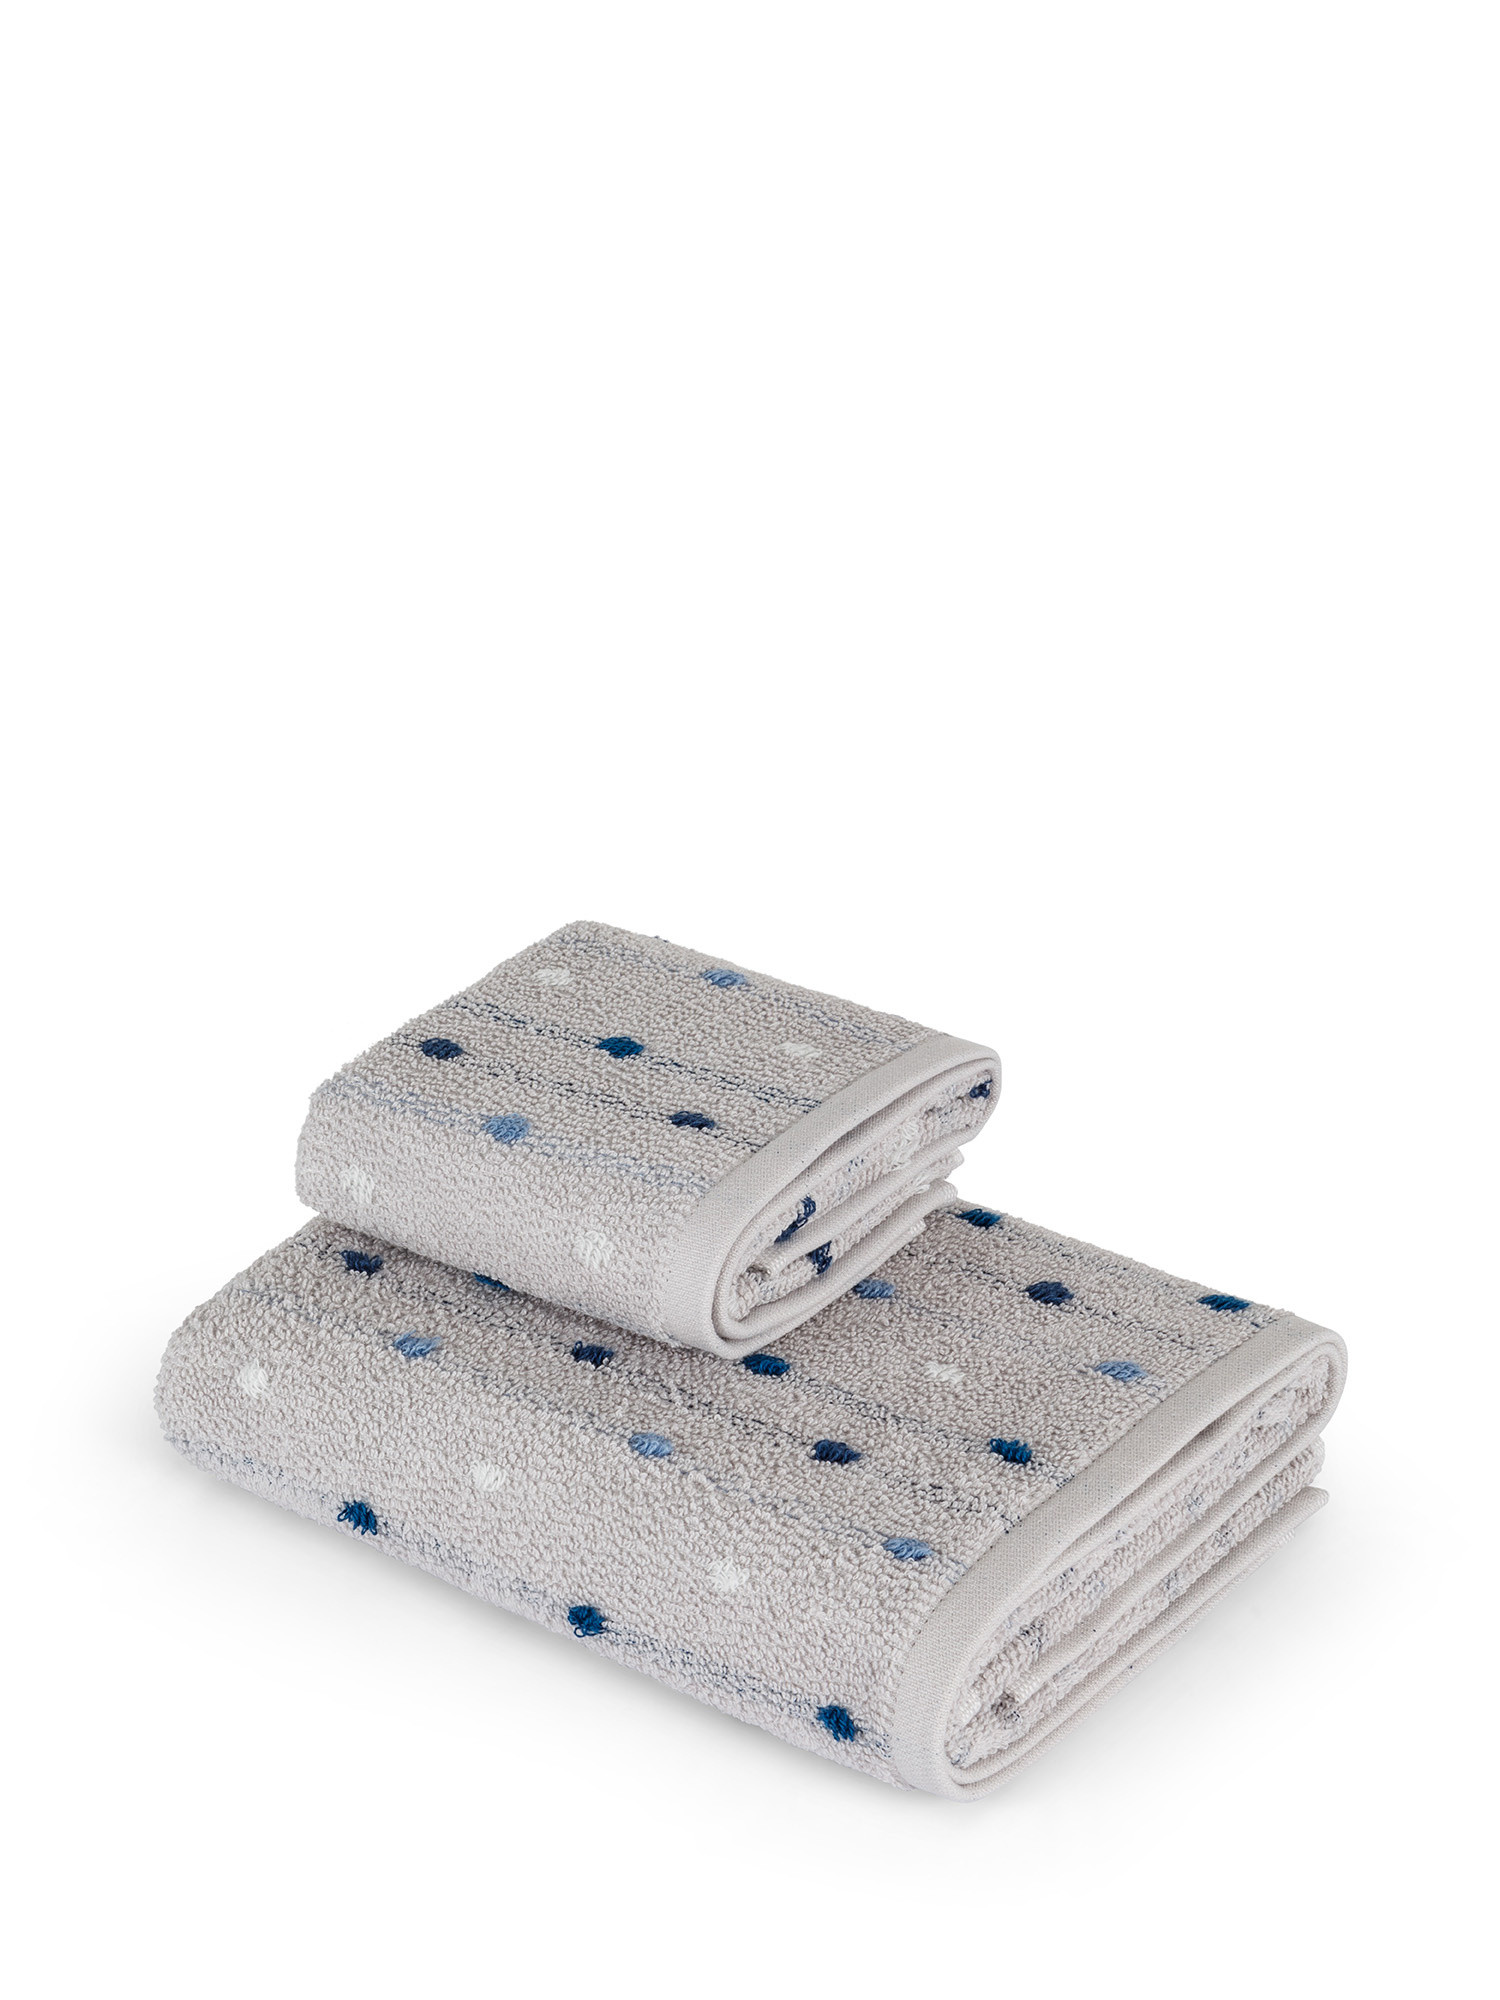 Asciugamano di puro cotone tinto in filo motivo pois, Grigio, large image number 0